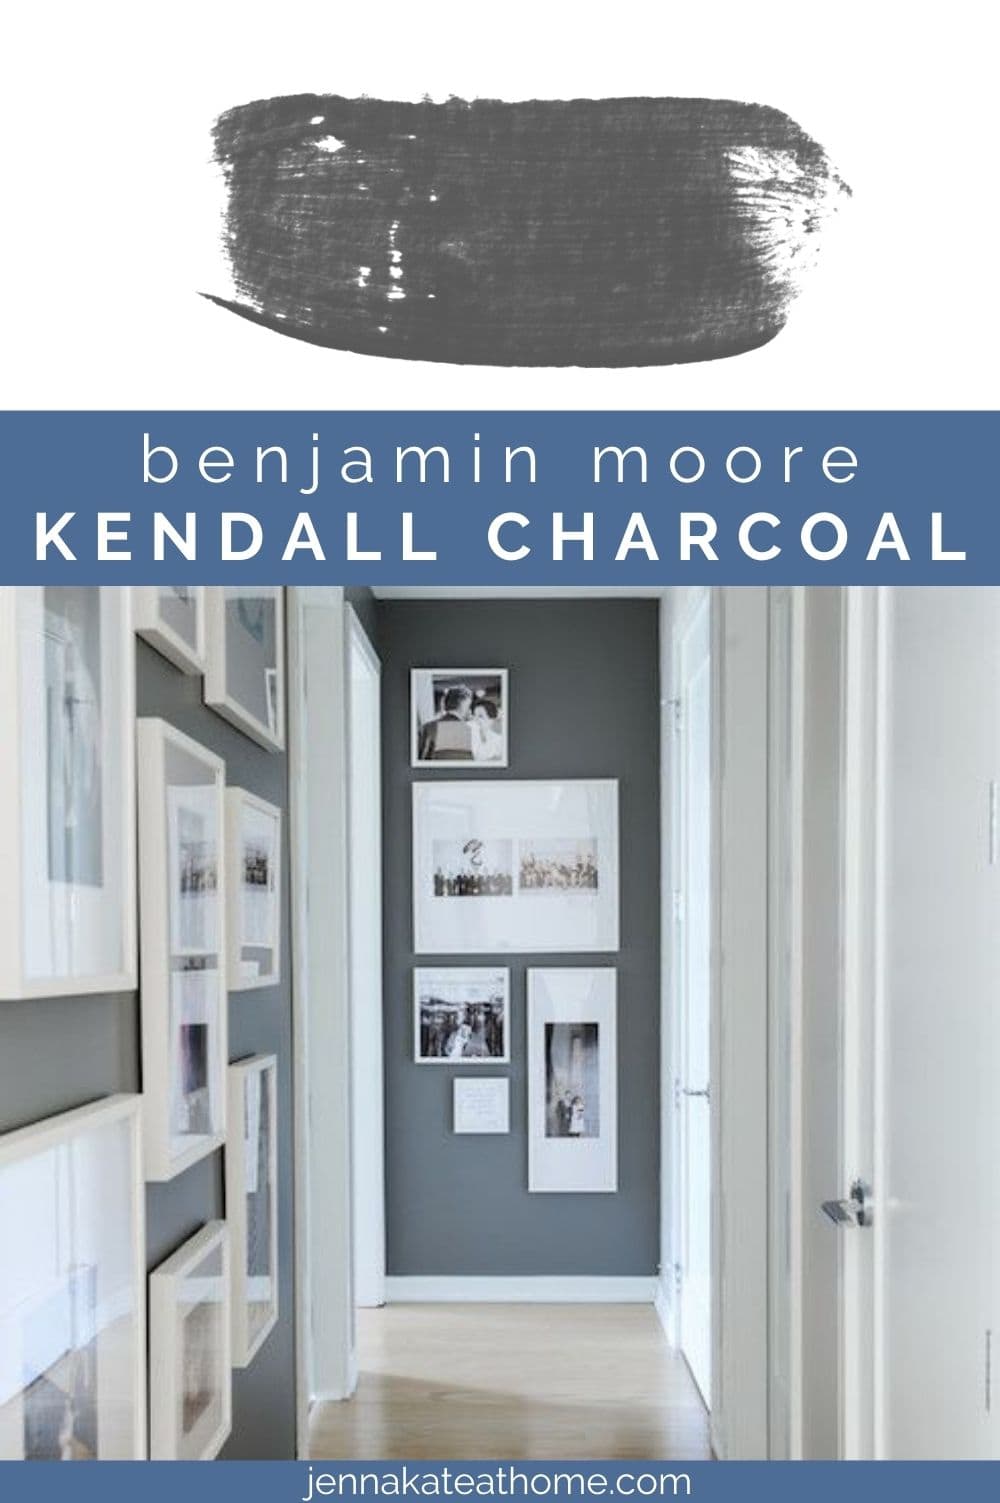 Benjamin Moore Kendall Charcoal pin